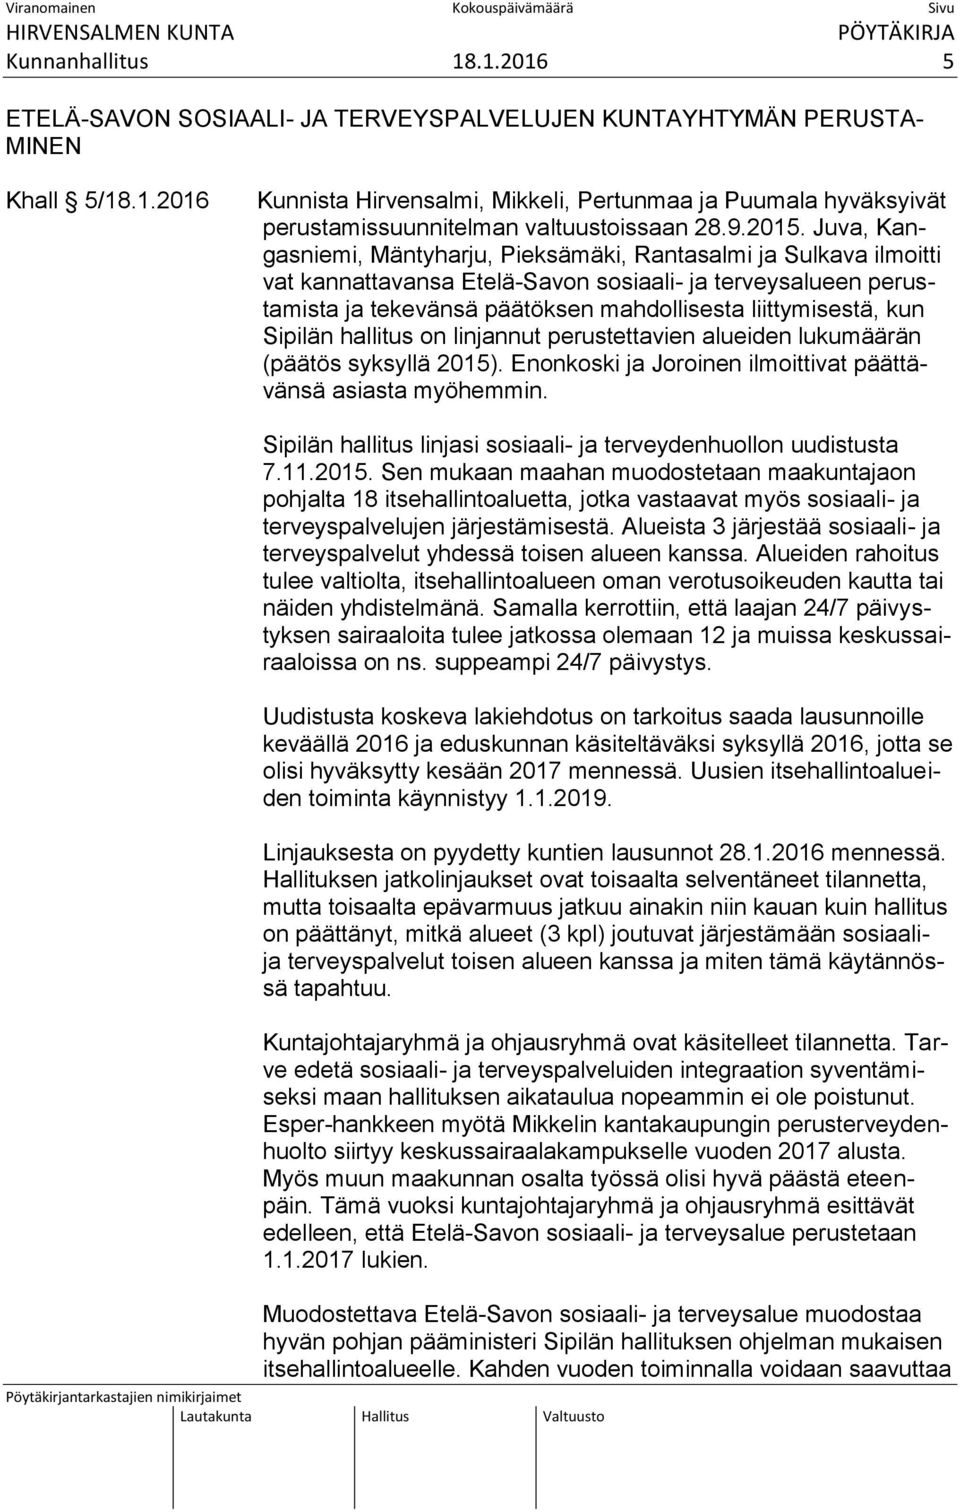 Juva, Kangasniemi, Mäntyharju, Pieksämäki, Rantasalmi ja Sulkava ilmoitti vat kannattavansa Etelä-Savon sosiaali- ja terveysalueen perustamista ja tekevänsä päätöksen mahdollisesta liittymisestä, kun